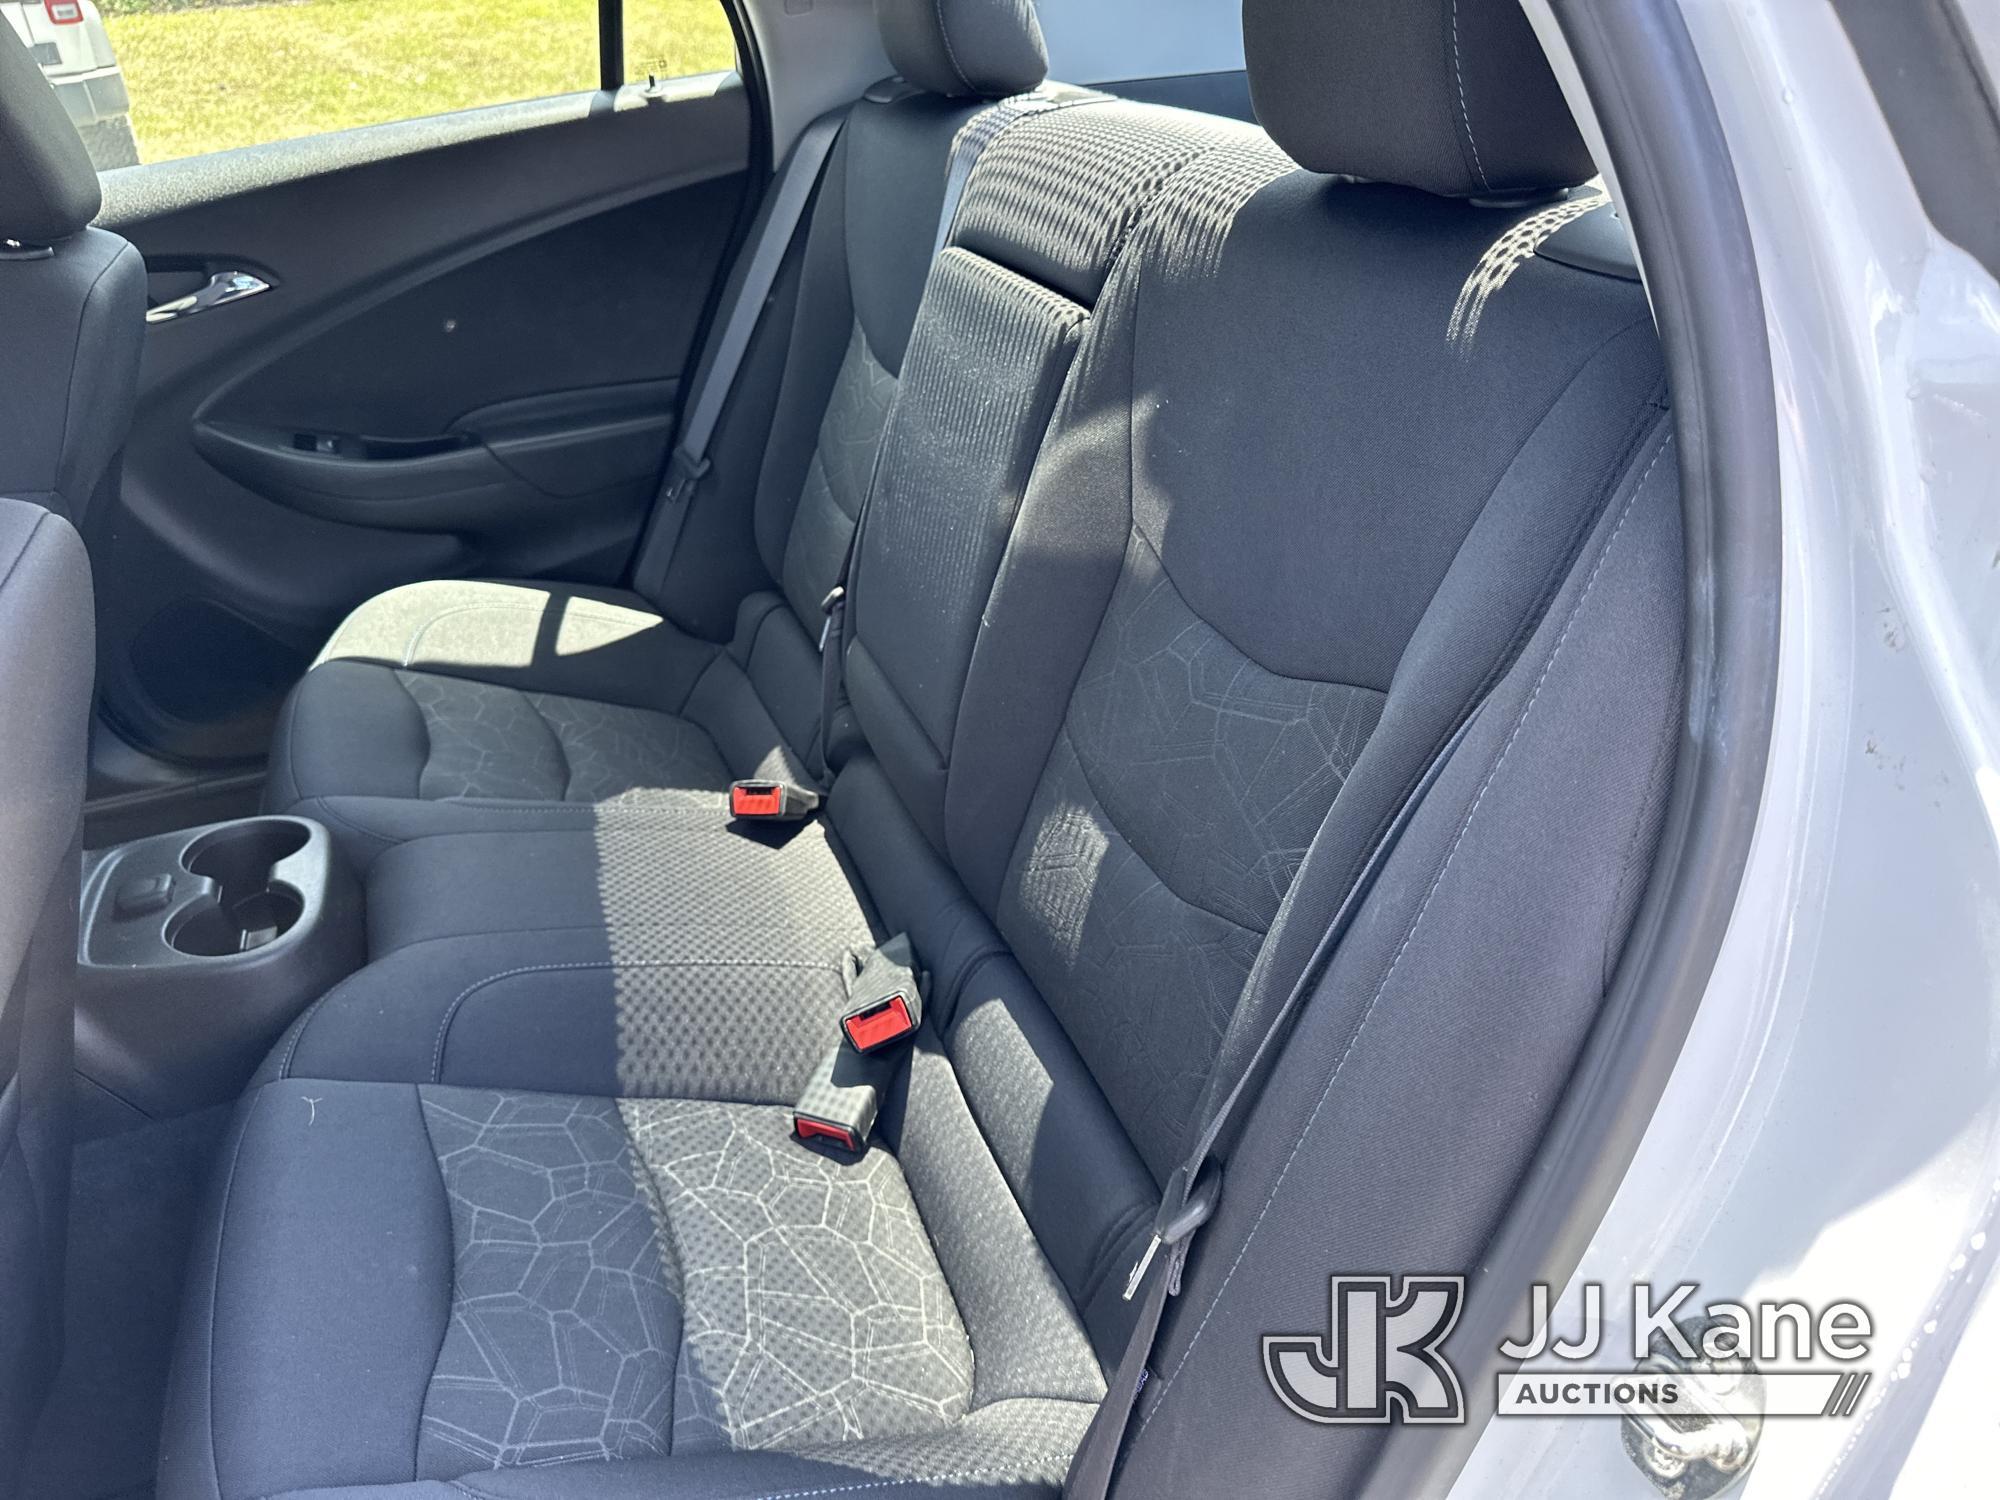 (Ocala, FL) 2017 Chevrolet Volt 4-Door Hybrid Sedan Duke Unit) (Runs & Moves) (Paint Damage